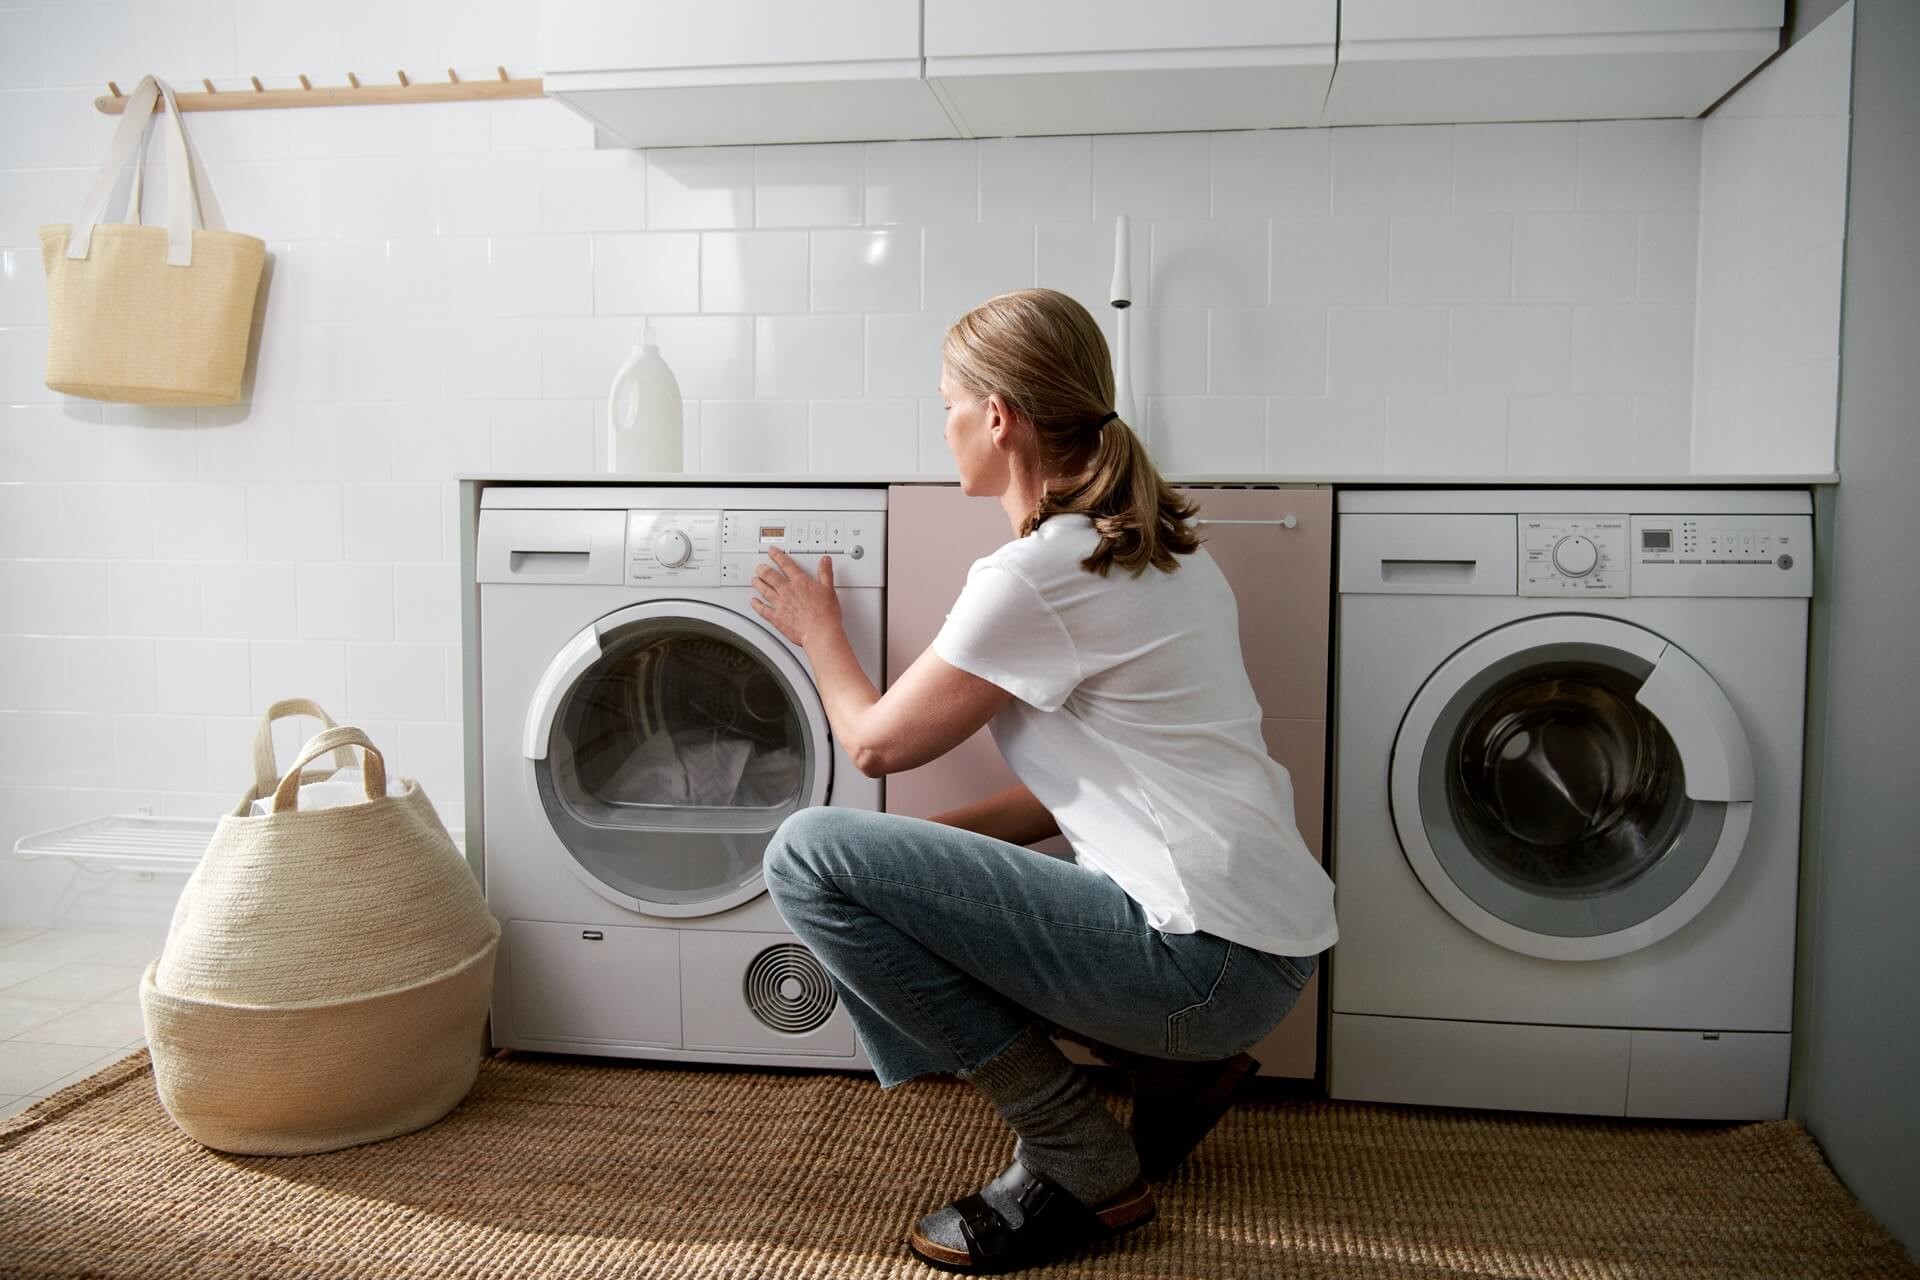 kin publiek Verspreiding Je wasmachine verhuizen? Lees onze tips | Vattenfall